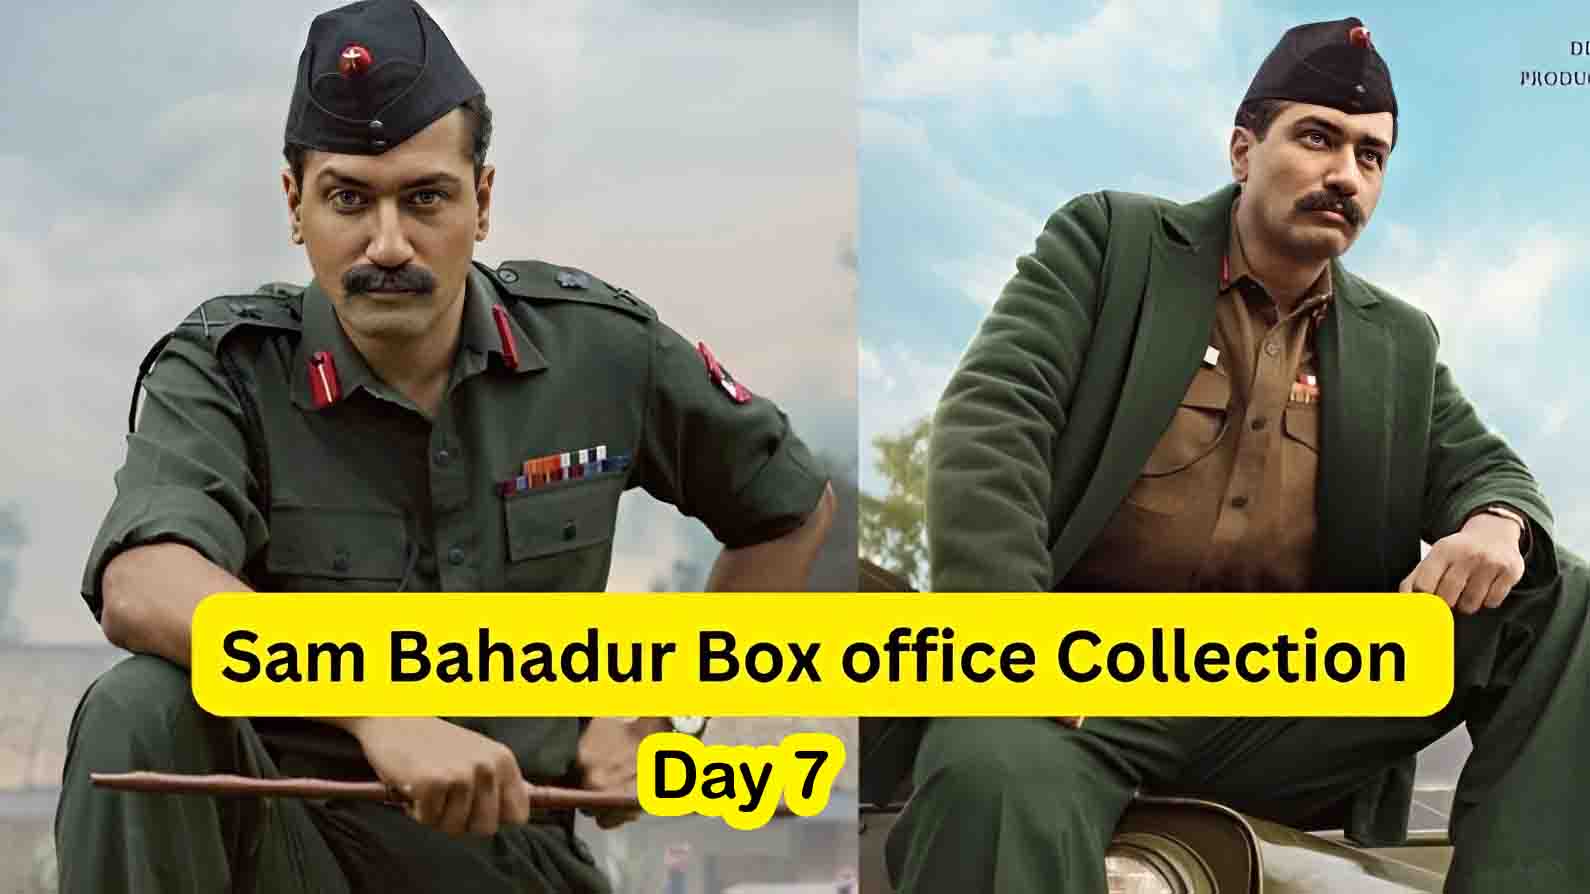 Sam Bahadur Box Office Collaction Day 7